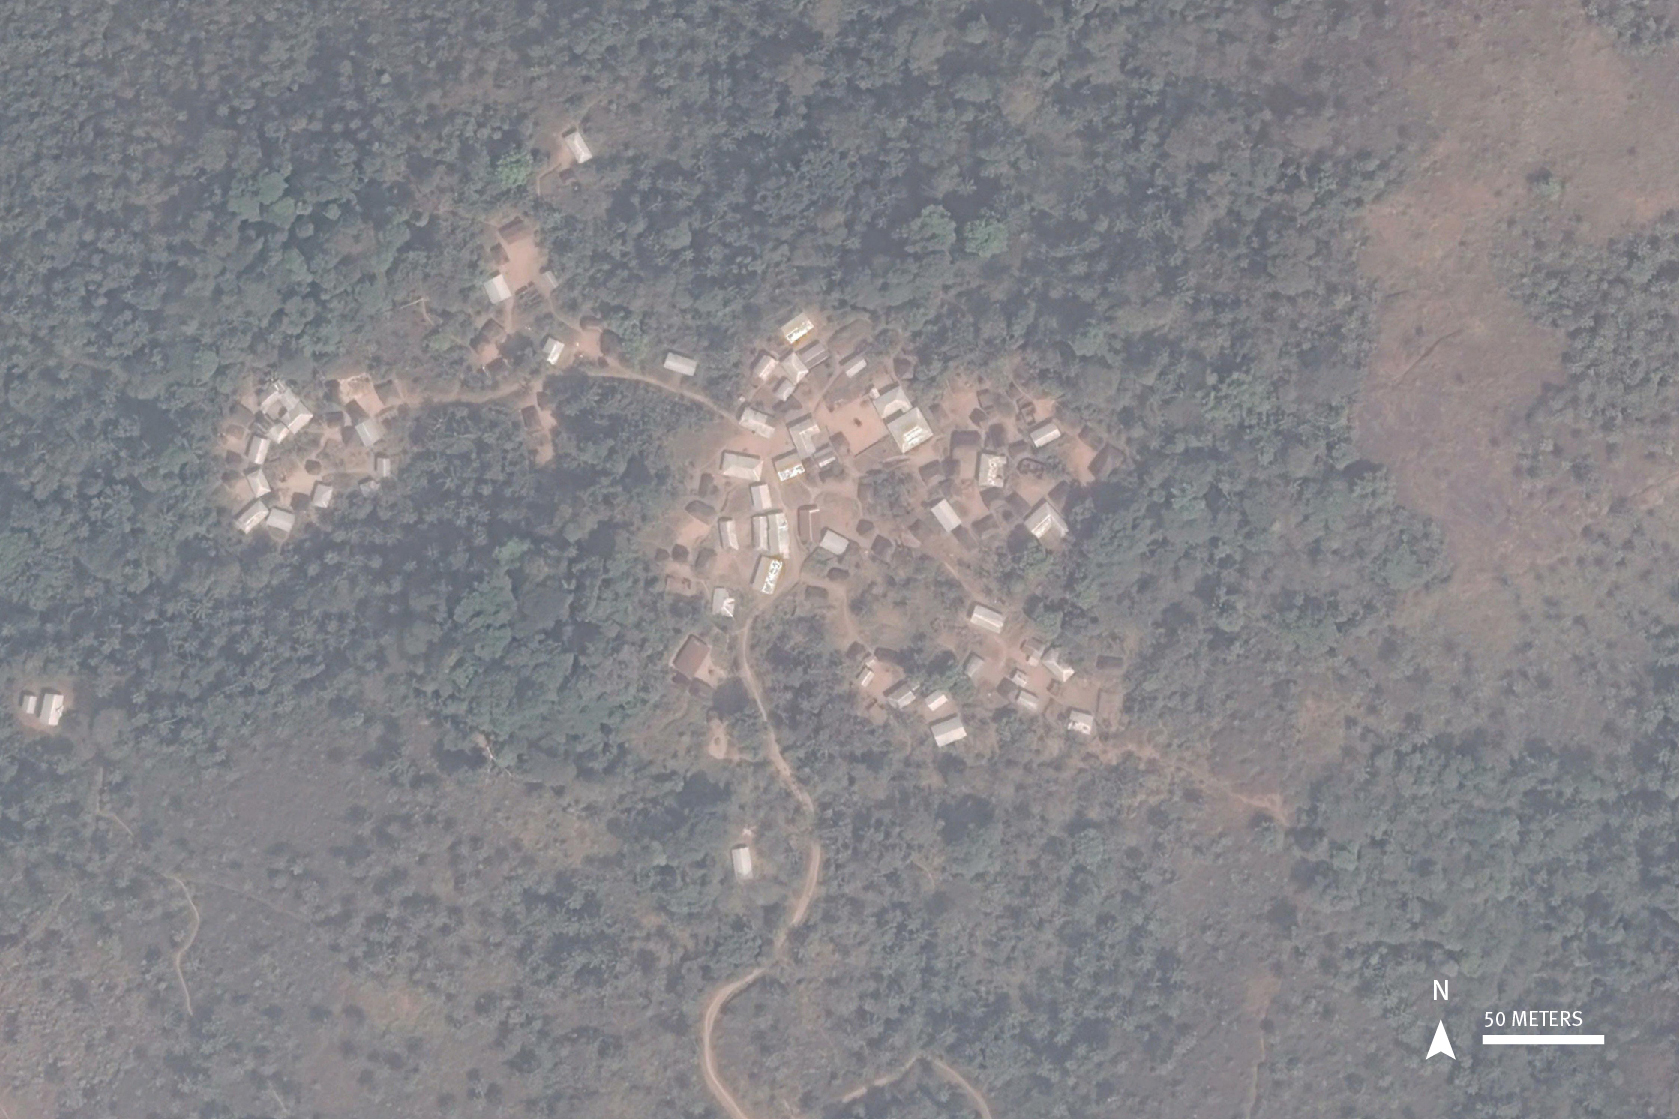 Image satellite montrant l'emplacement du village de Missong, région du Nord-Ouest, Cameroun, identifié par Billy Burton à partir de la base de données des atrocités au Cameroun, basée sur une carte en ligne et en open-source. Image : 21 janvier 2017